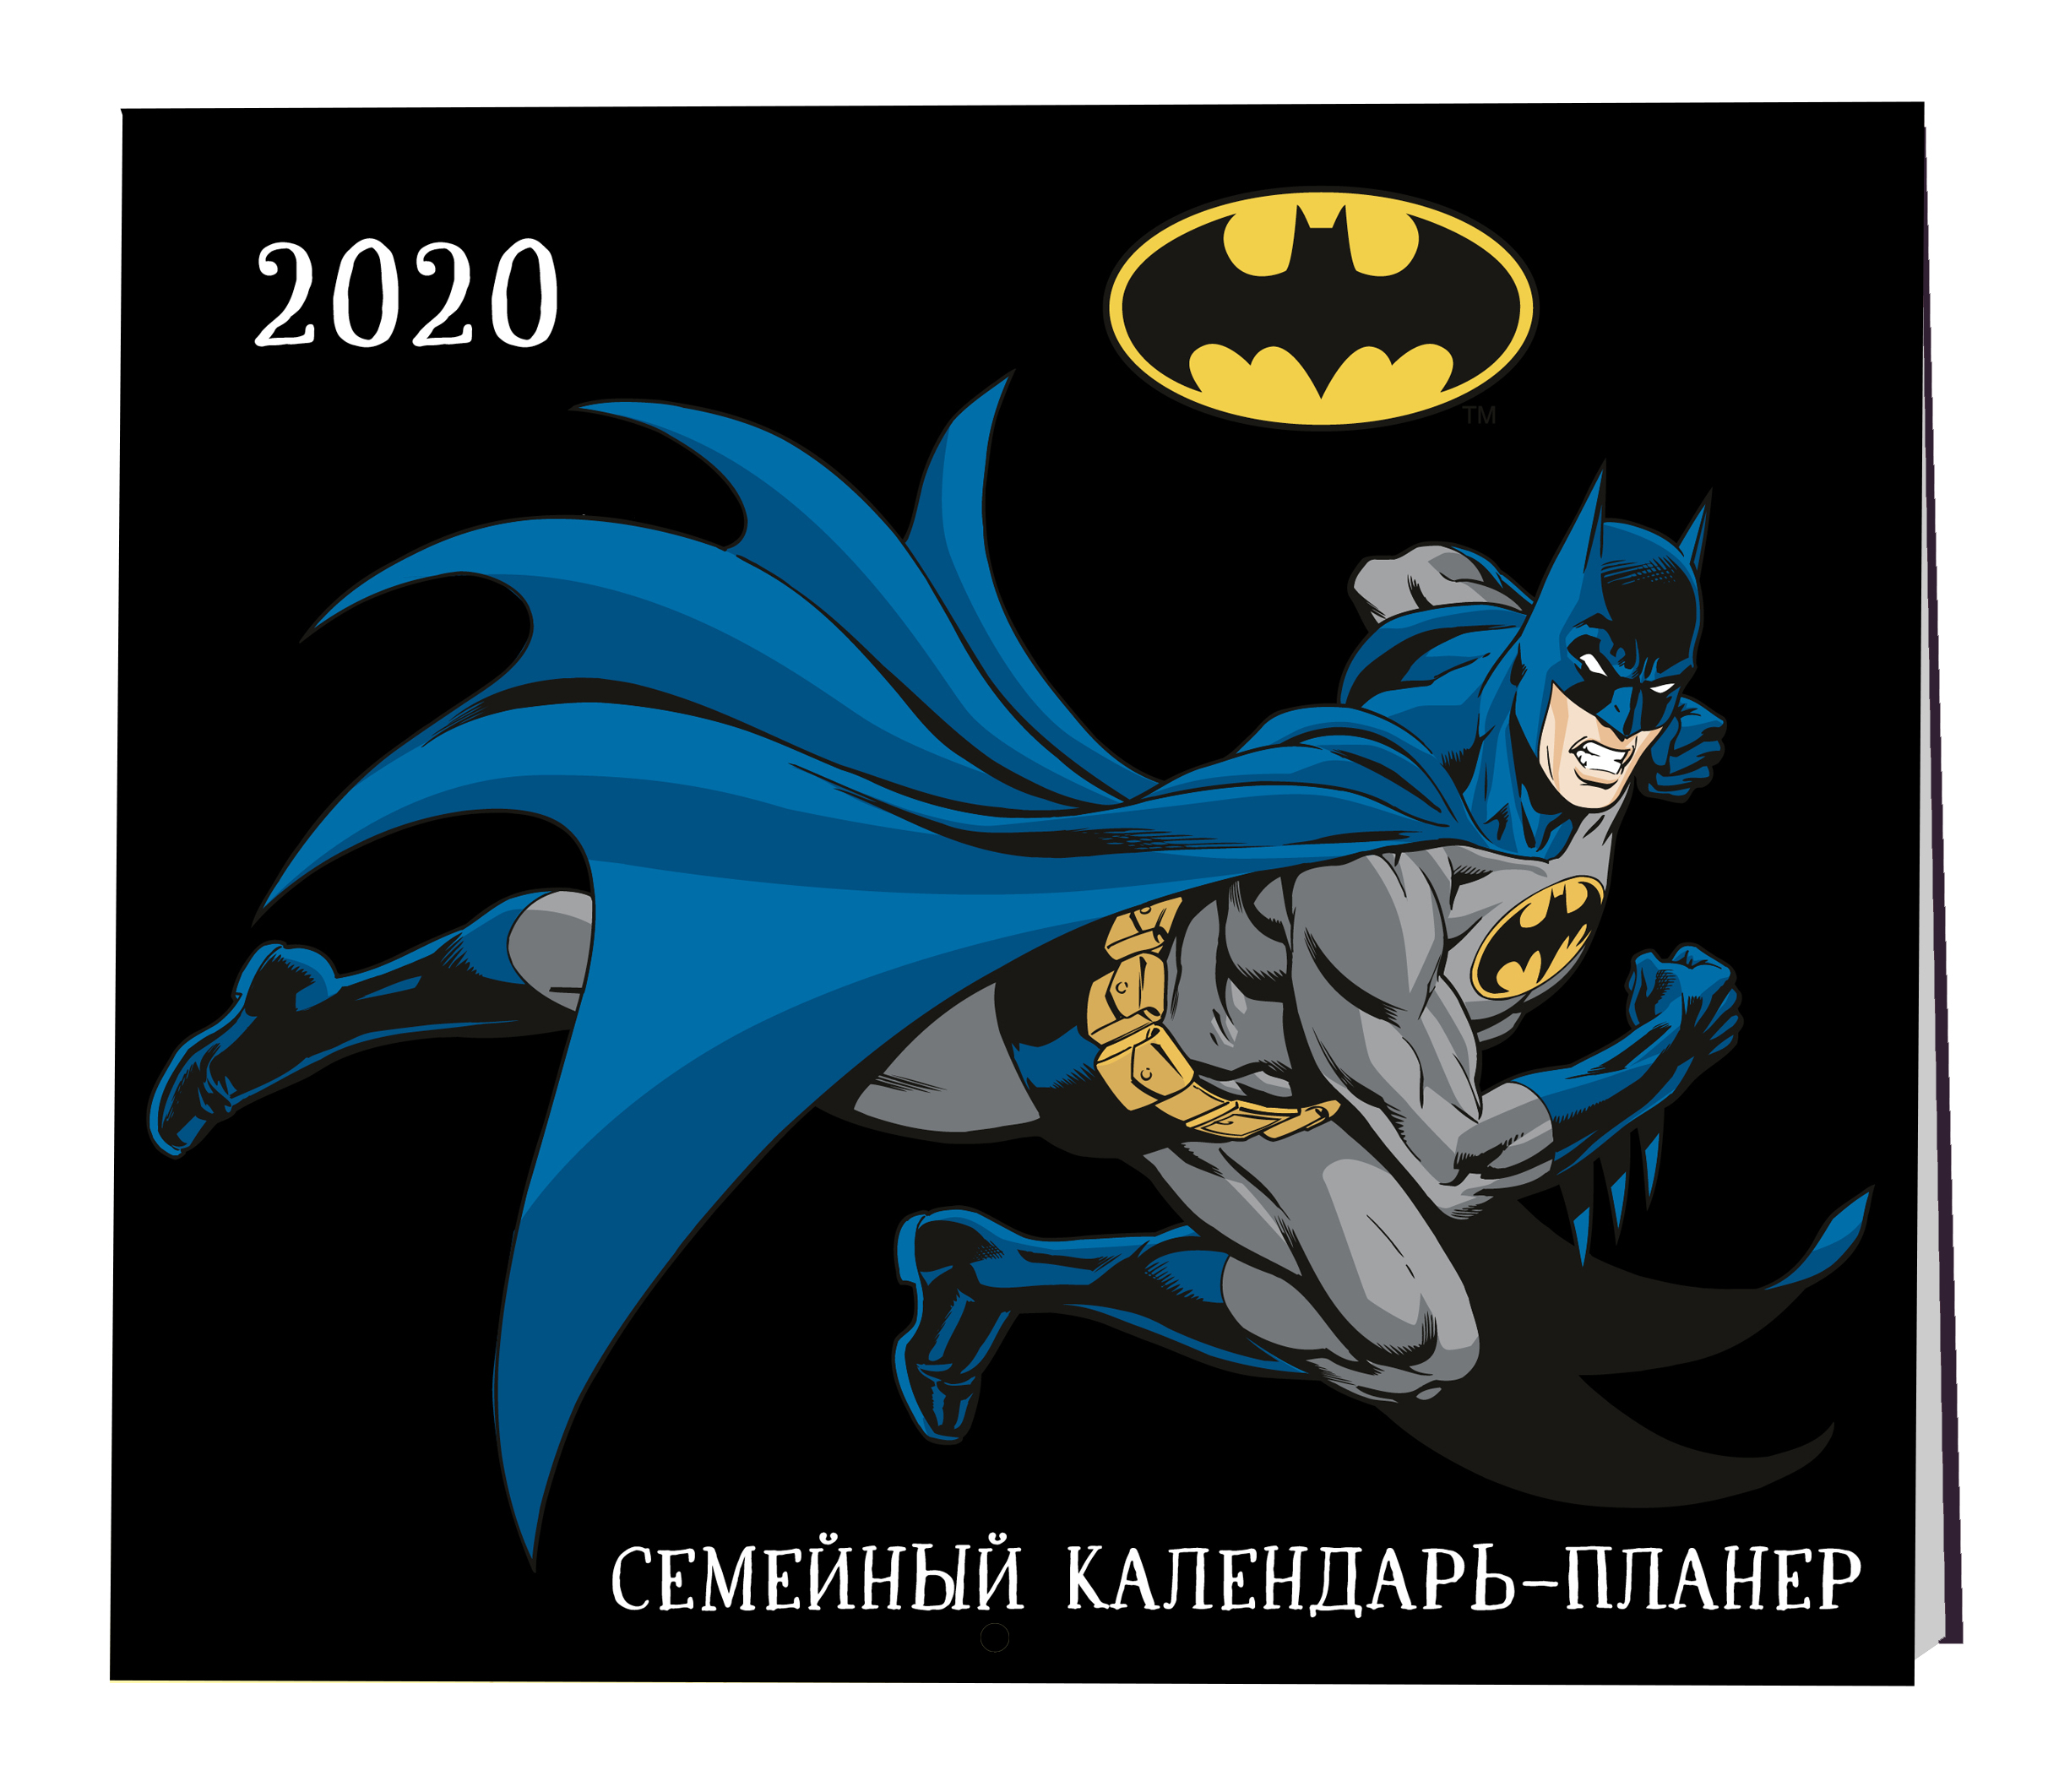 Евгения Гапчинская Бэтмен. Семейный календарь-планер на 2020 год (245х280 мм)